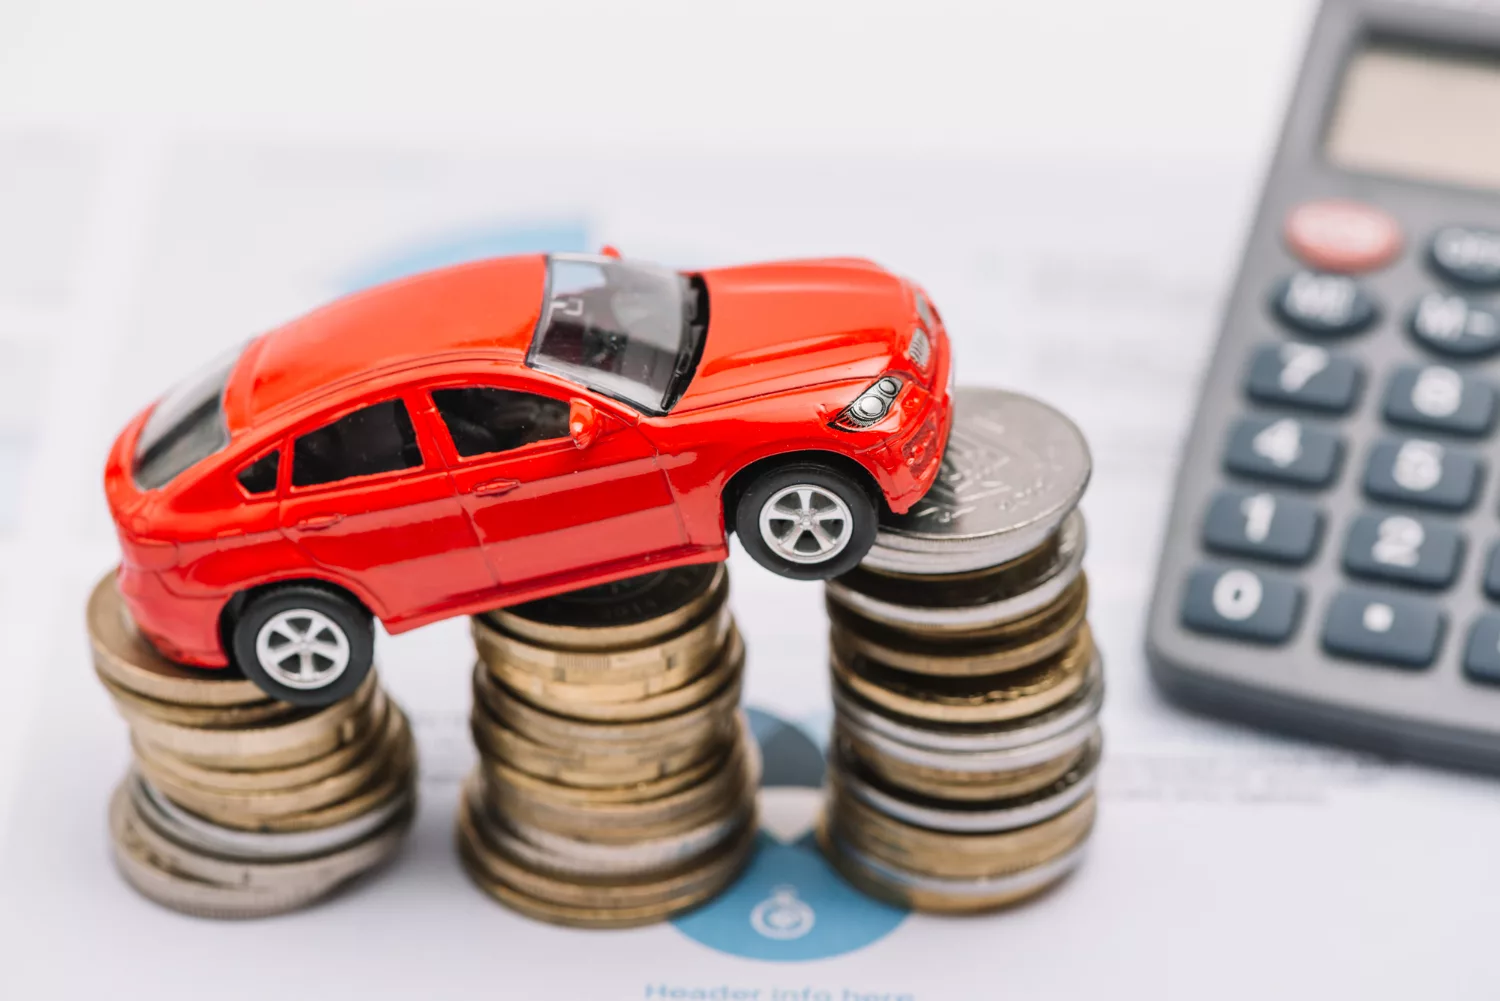 Réduire les coûts de votre transport automobile : astuces et conseils pratiques